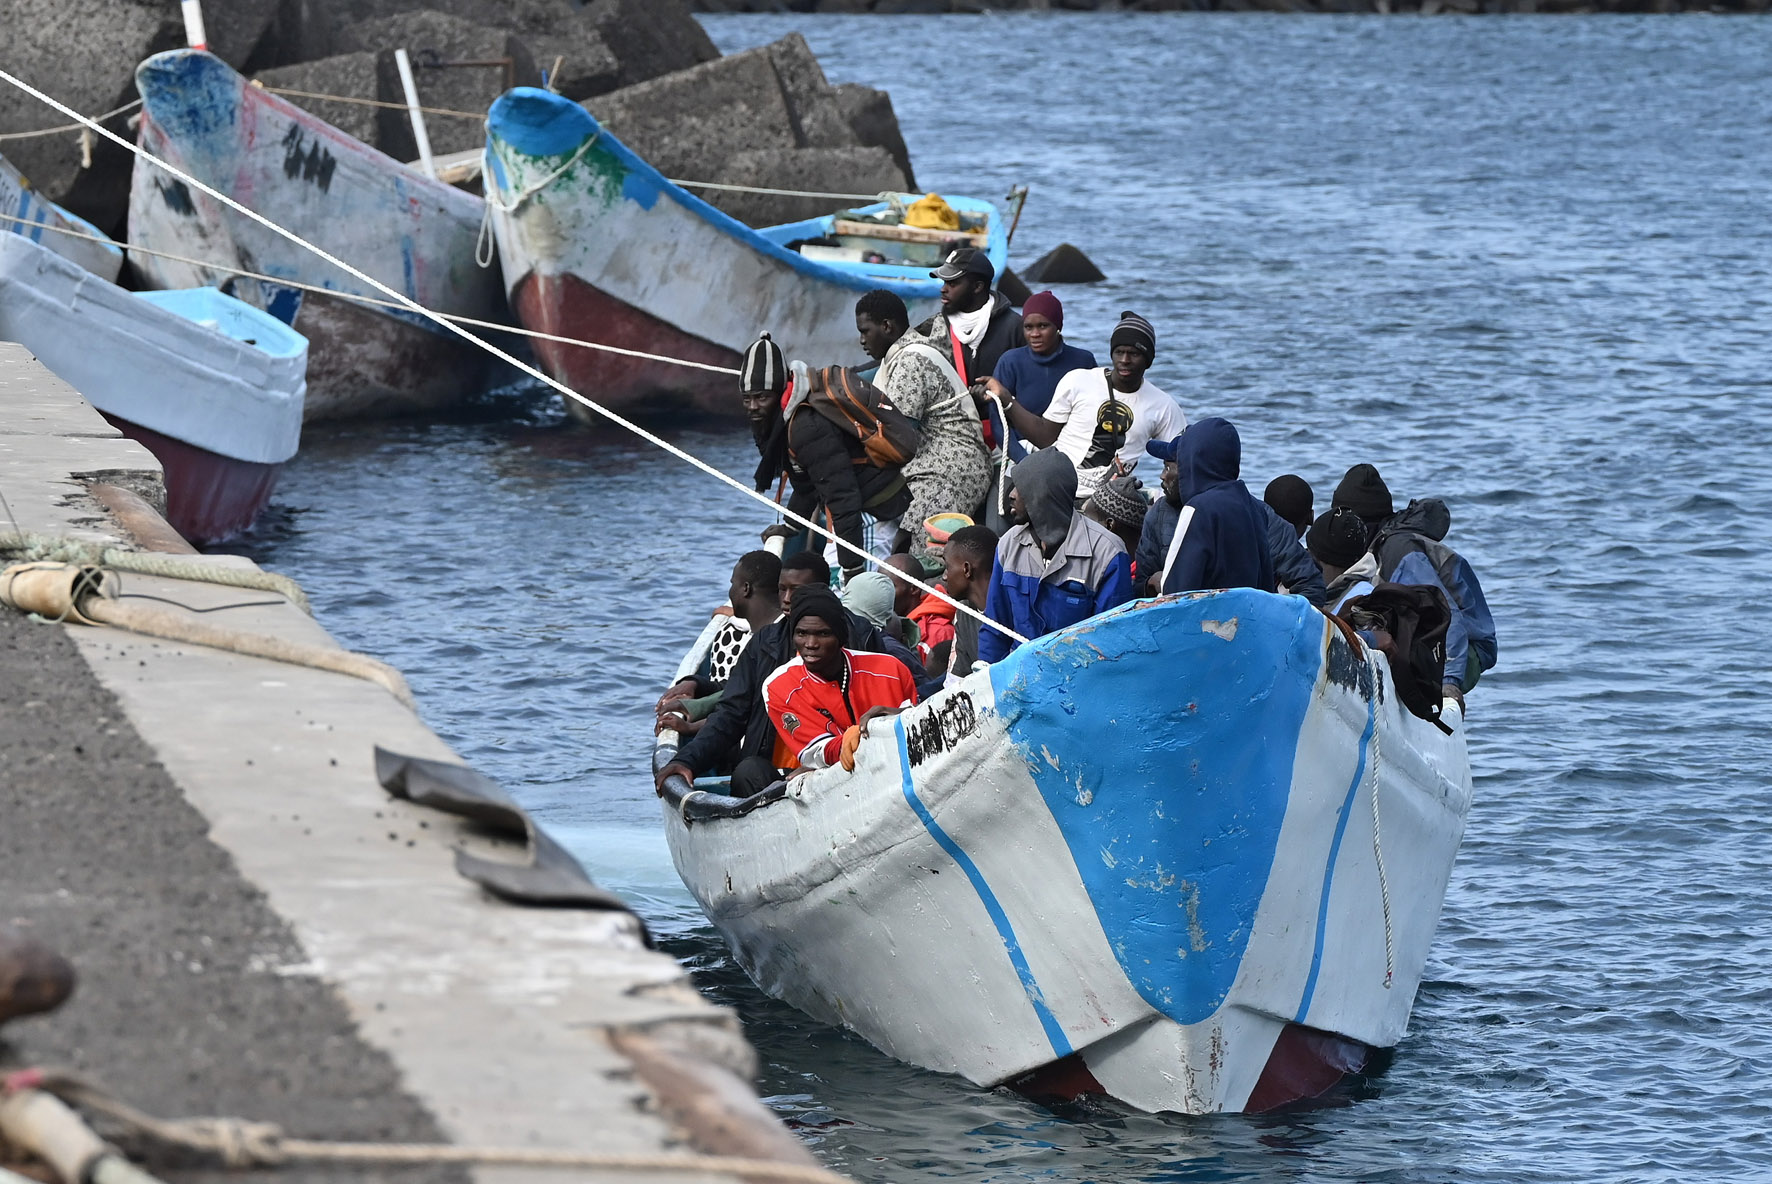 Un total de 204 personas han arribado a El Hierro en las últimas 24 horas, a bordo de 3 embarcaciones